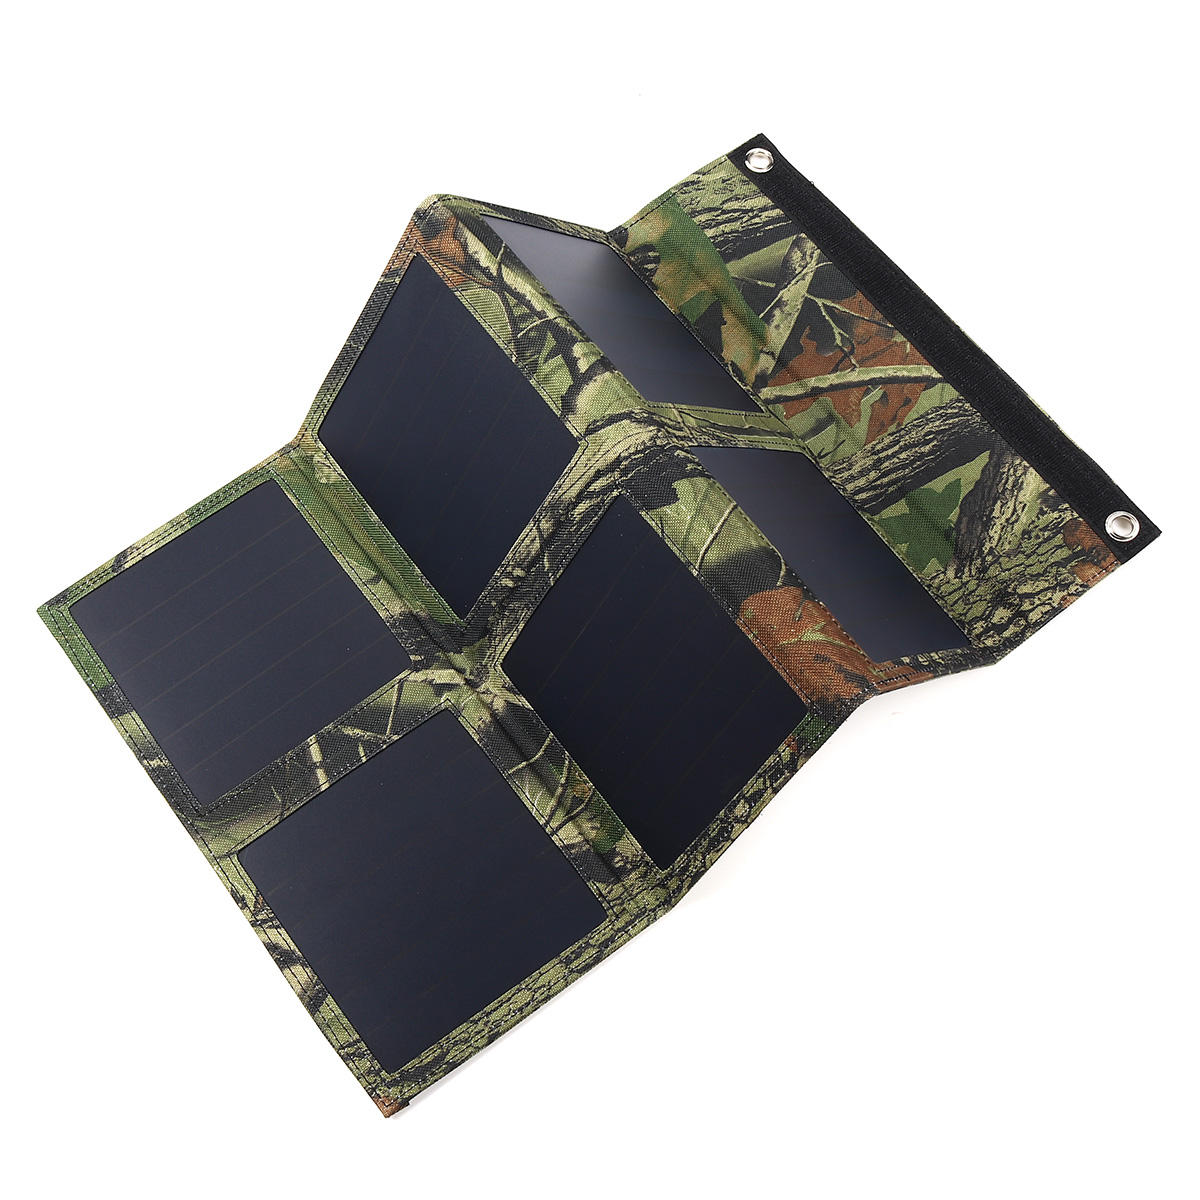 

25 Вт 5V Складная панель Солнечная Зарядное устройство Солнечная Power Bank Dual USB Камуфляжный рюкзак Кемпинг Походы д